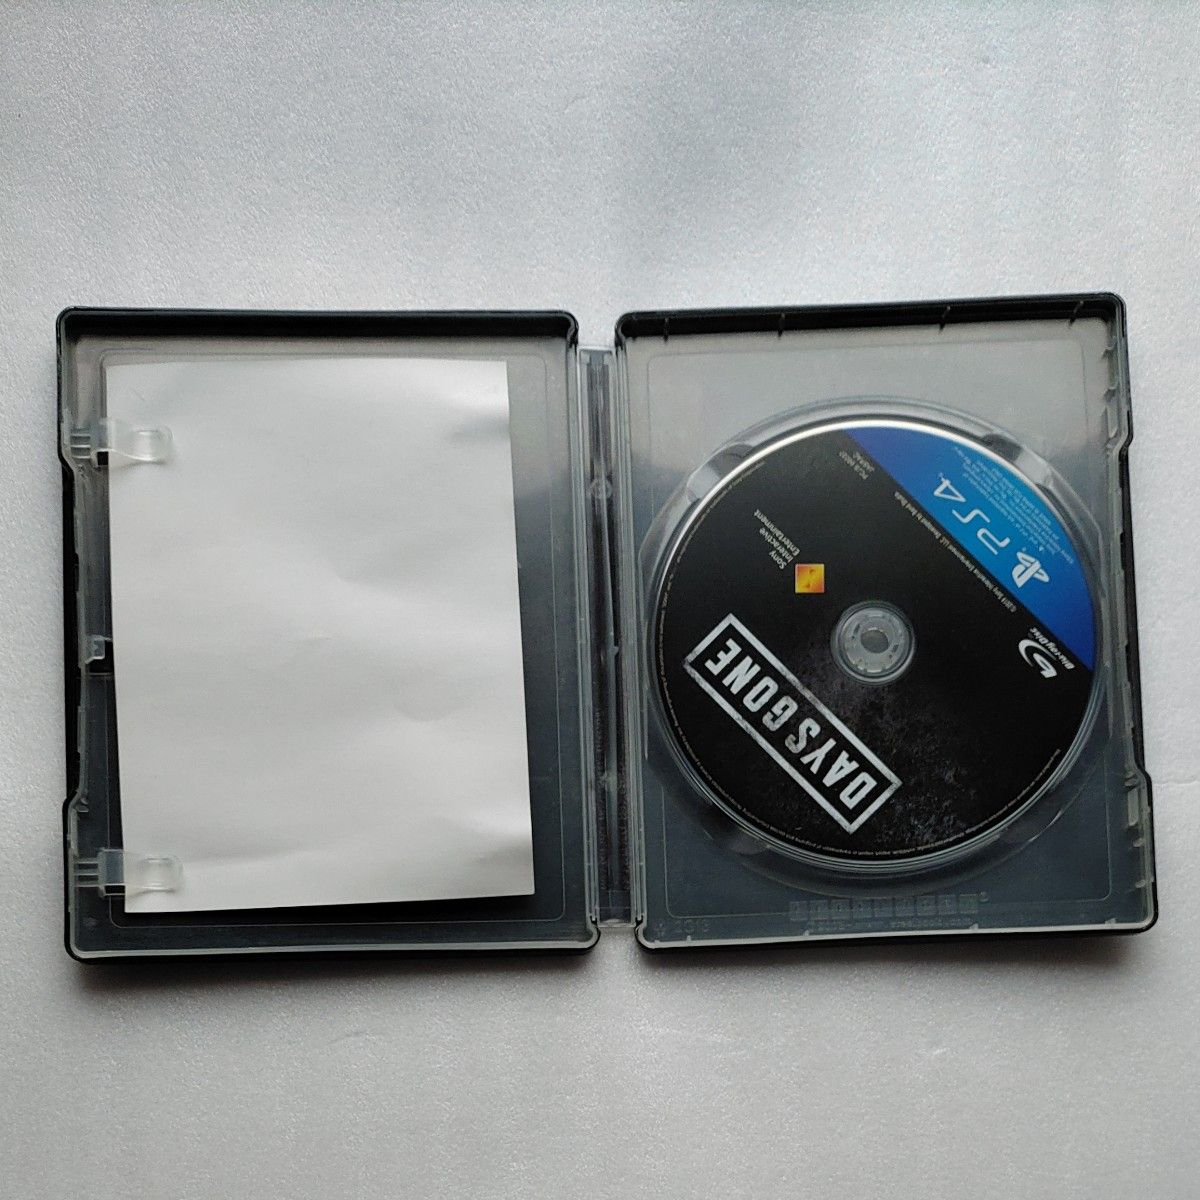 【PS4】 Days Gone ゲオ限定 オリジナルスチールブック ケース